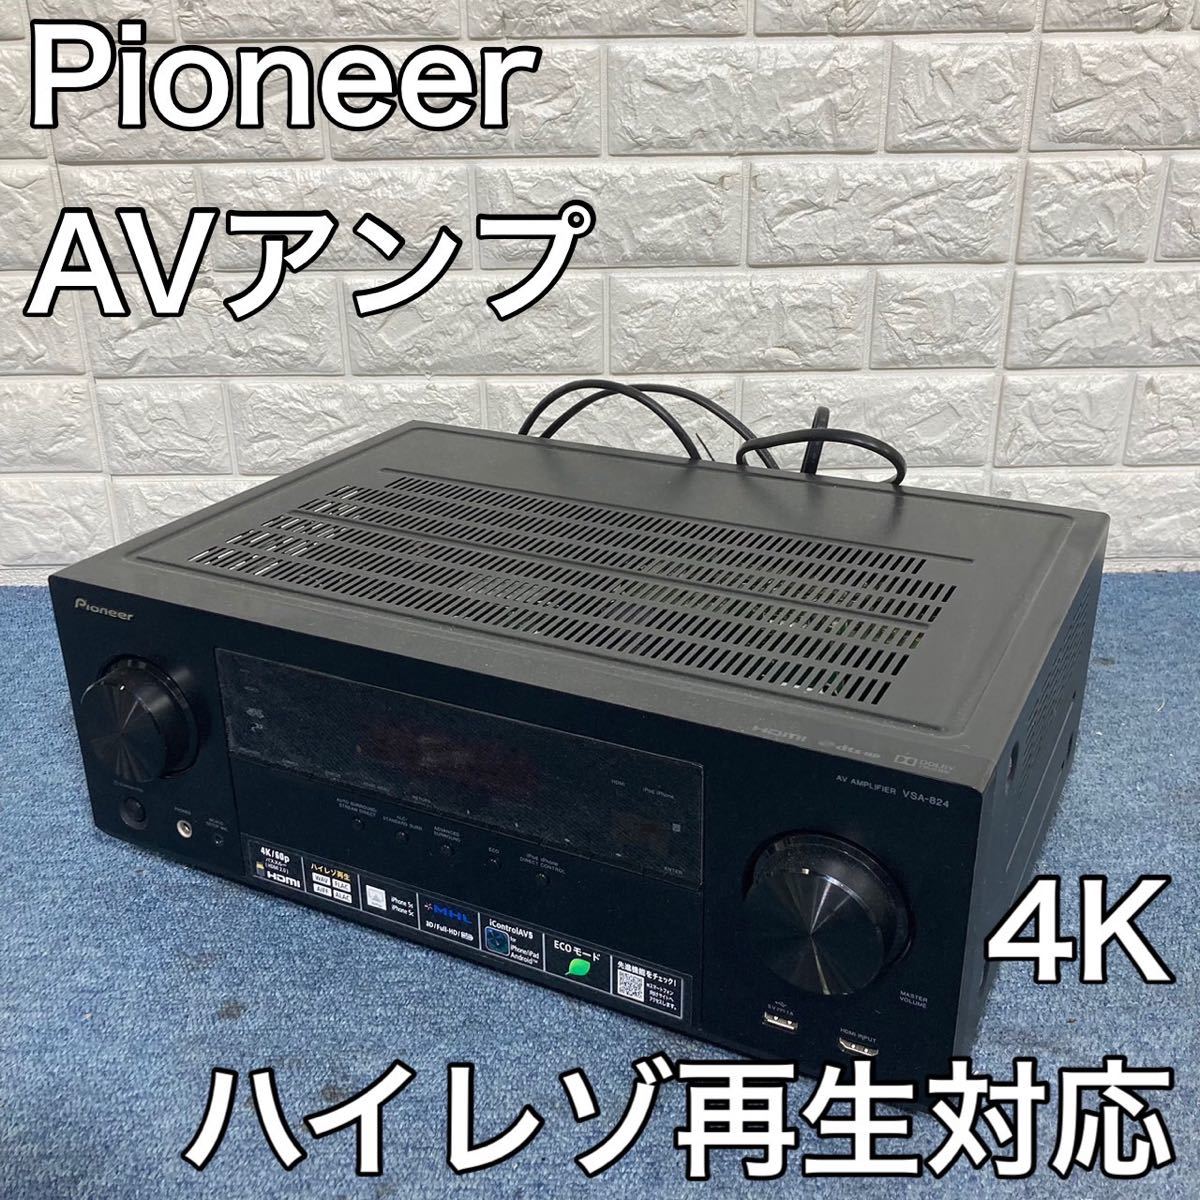 Pioneer パイオニア VSA-824 AVアンプ 4K C621